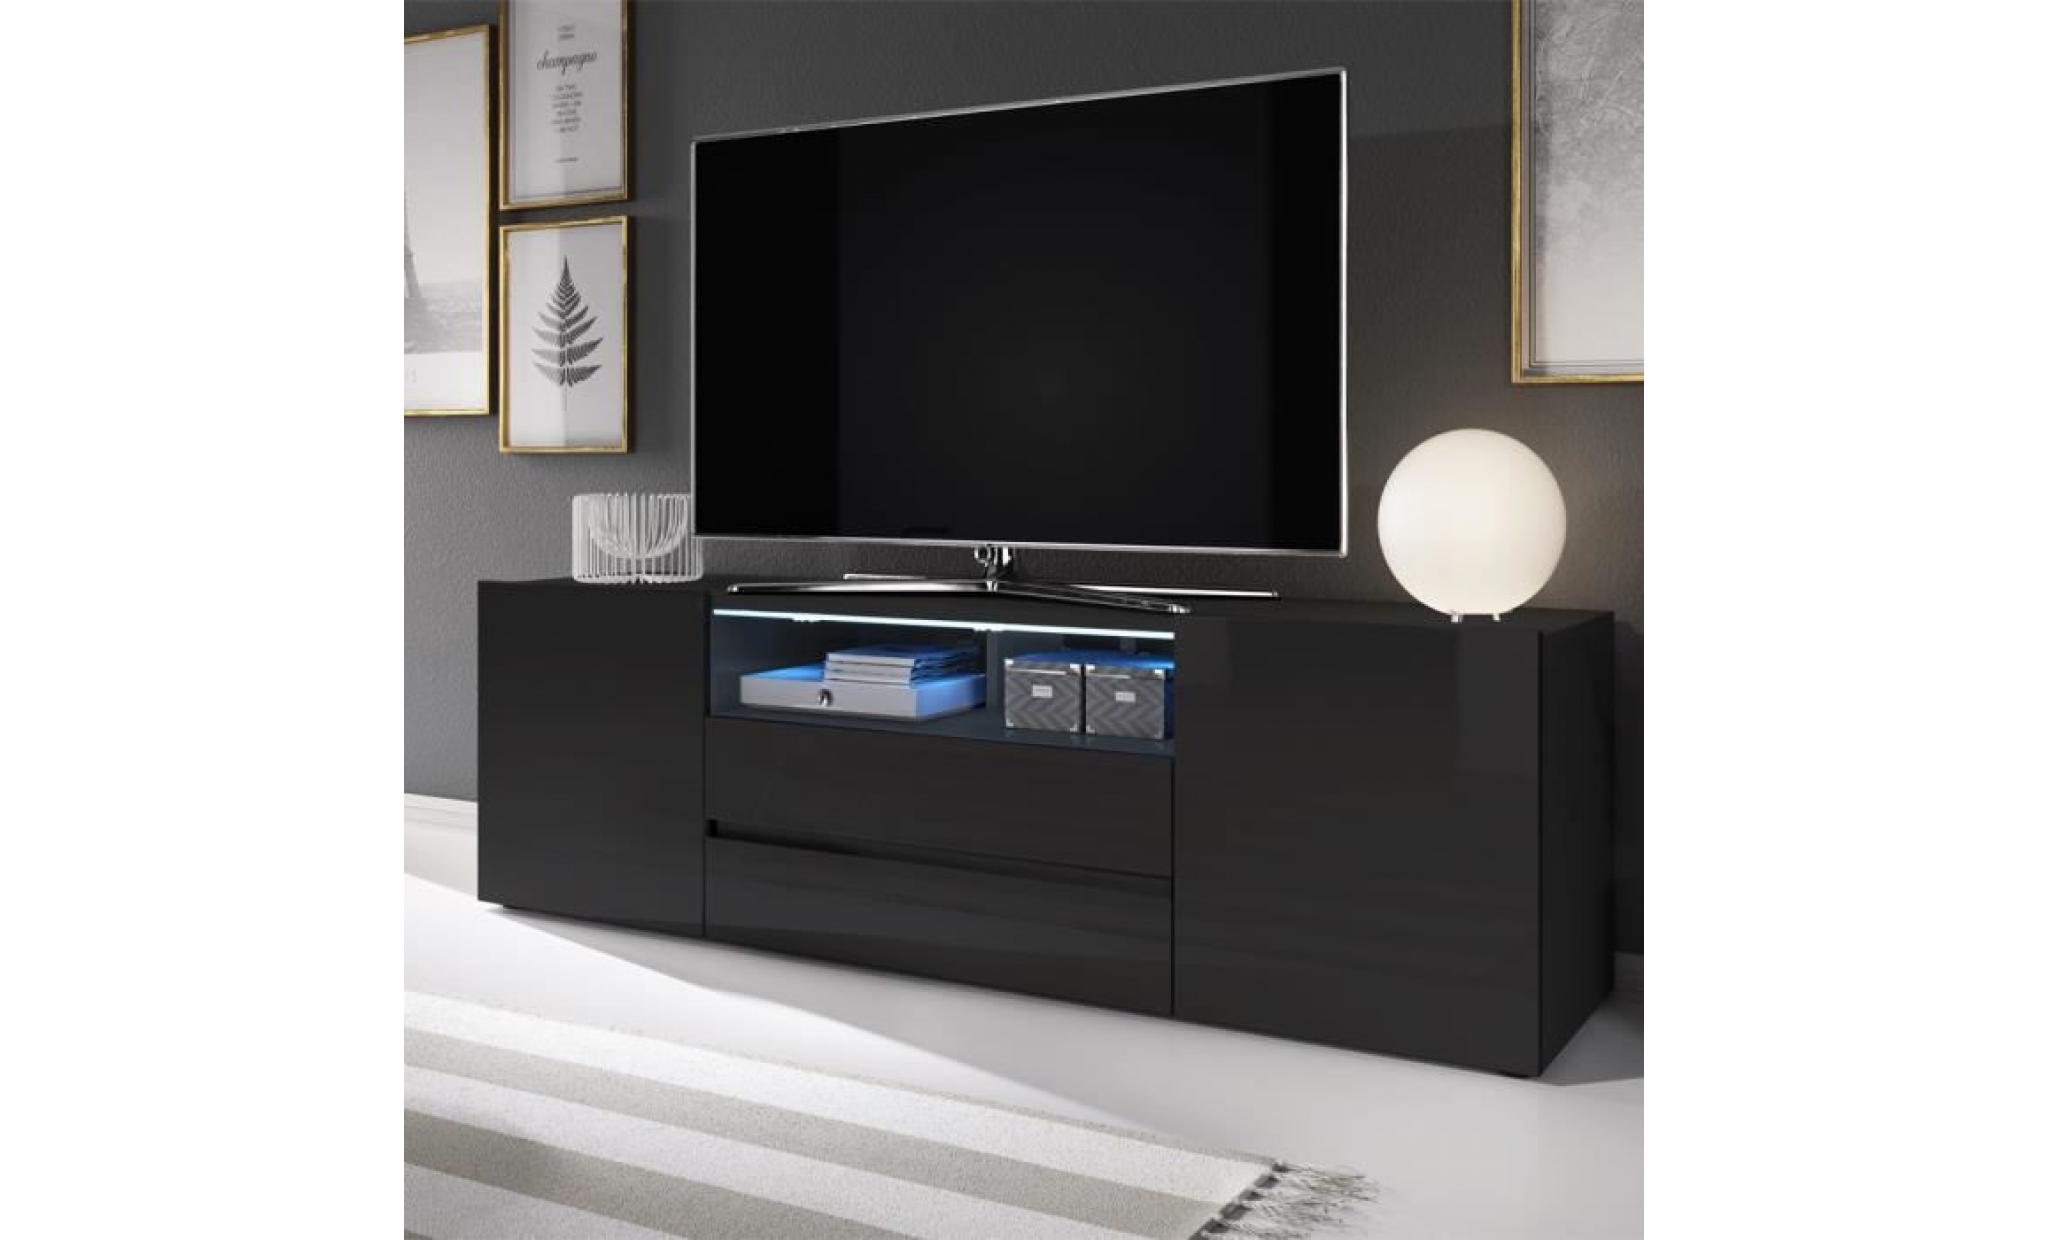 meuble tv / meuble de salon   bros   137 cm   noir mat / noir brillant   avec led   2 niches ouvertes   4 compartiments fermés